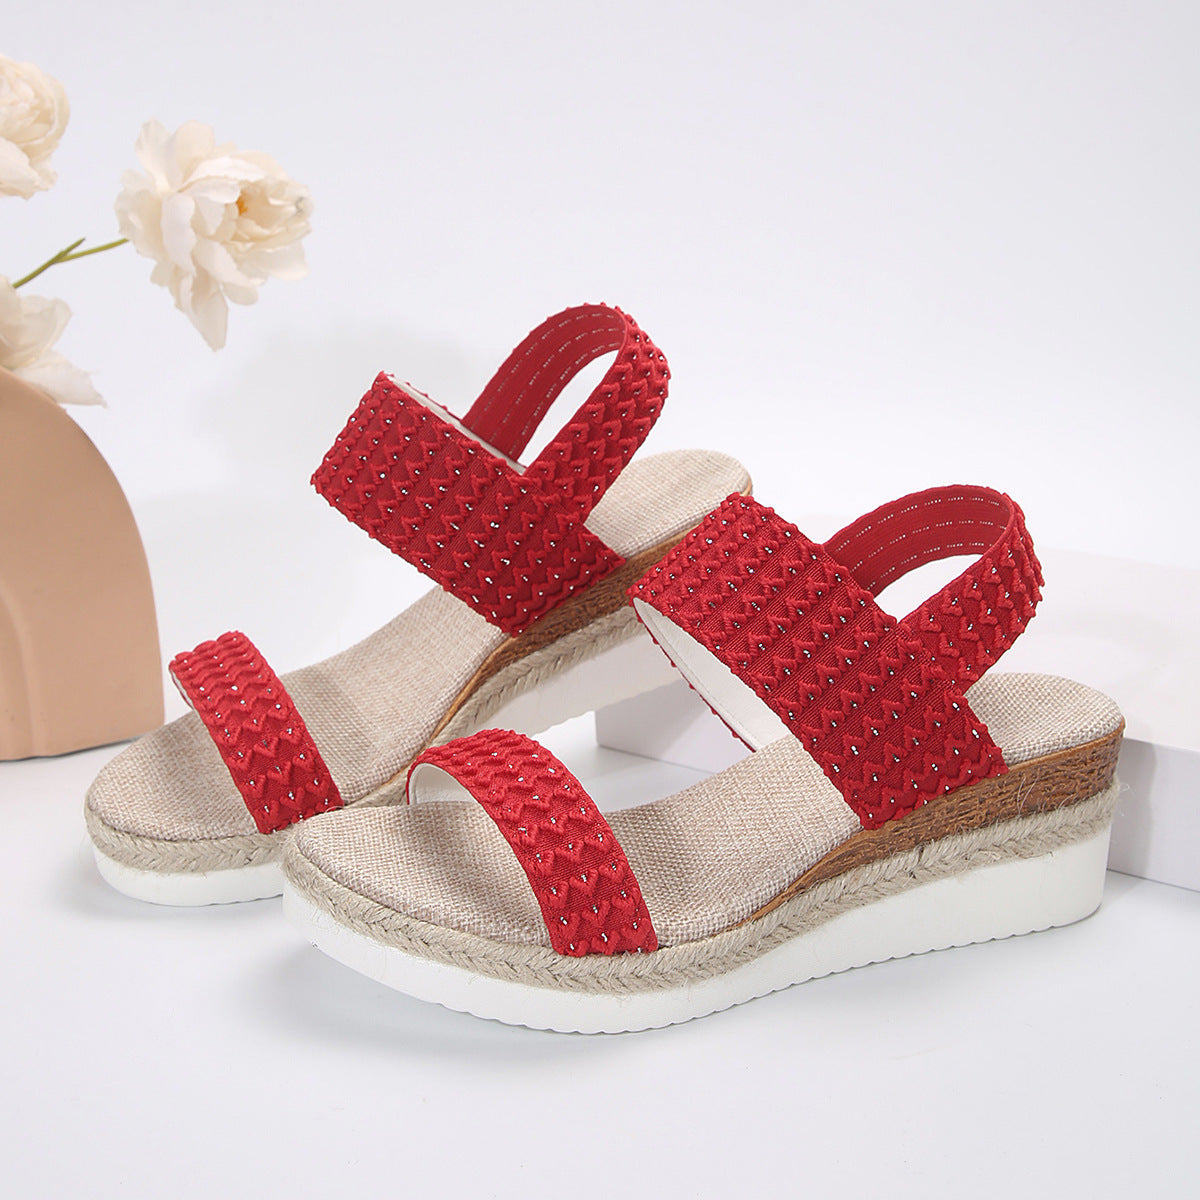 Lovemi -  Peep-Toe Wedge Sandals